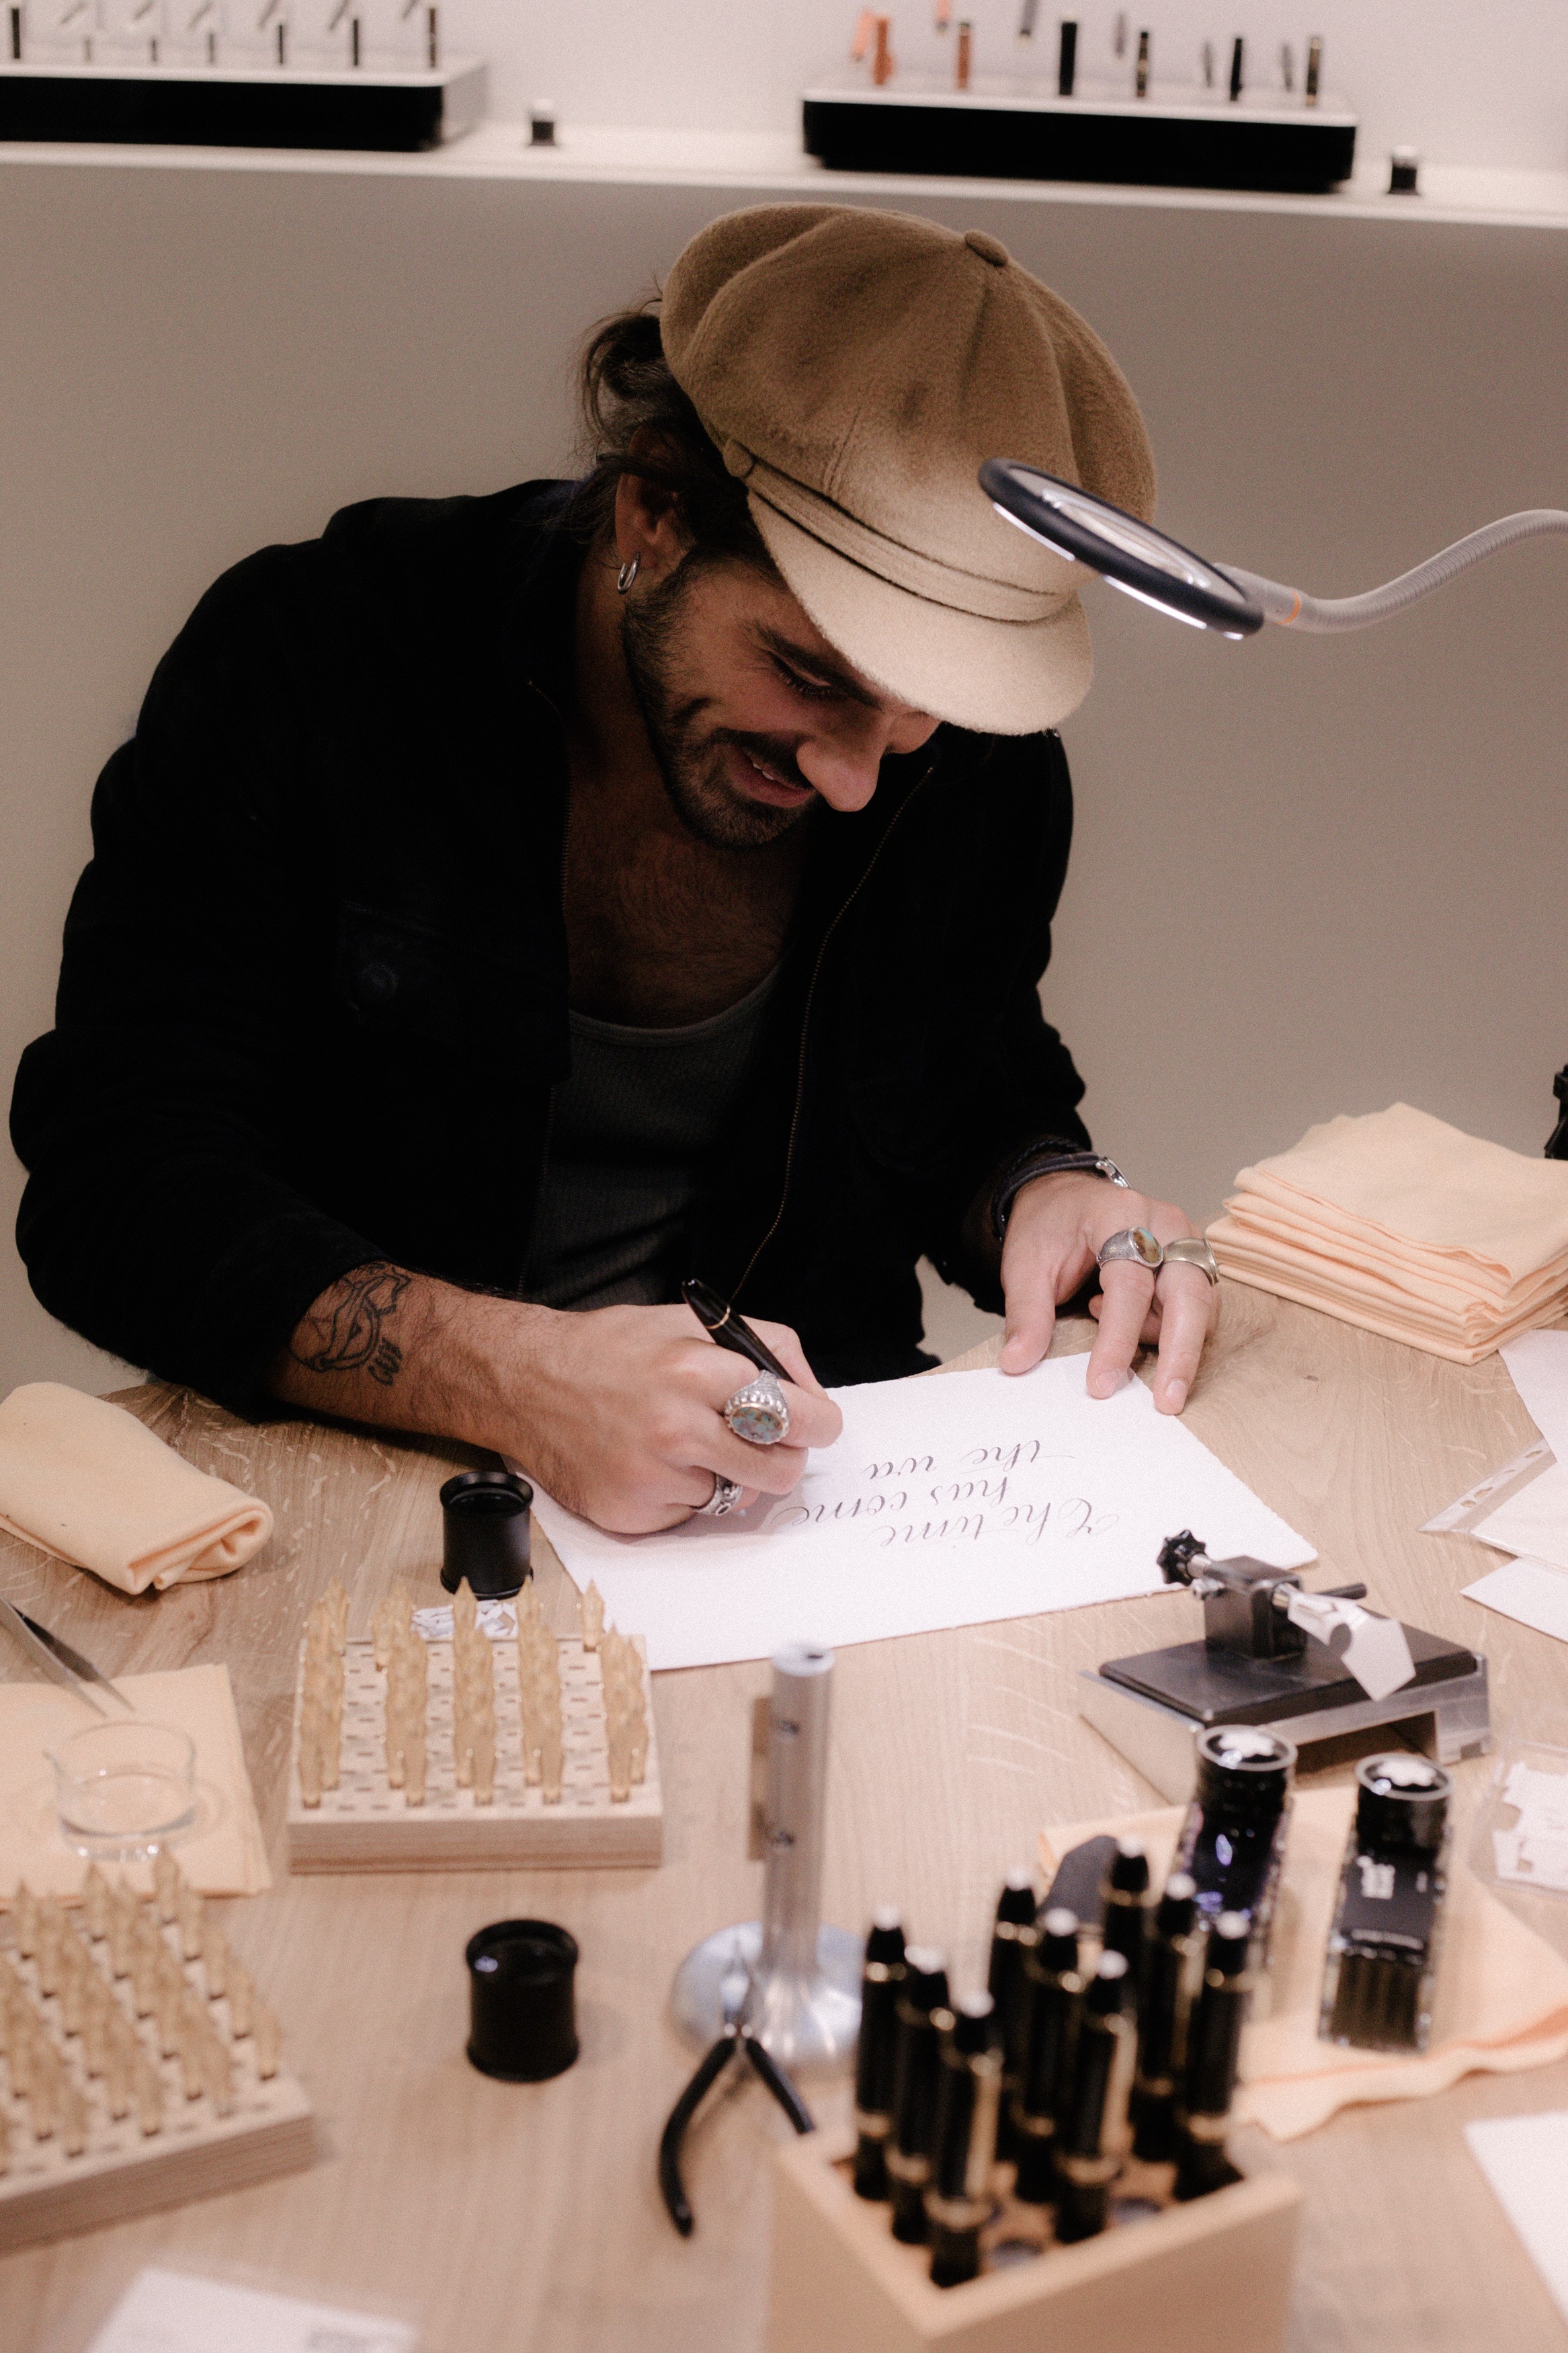 O influencer italiano Giotto Calendoli conhecendo o processo de manufatura da Montblanc (Foto: Divulgação)